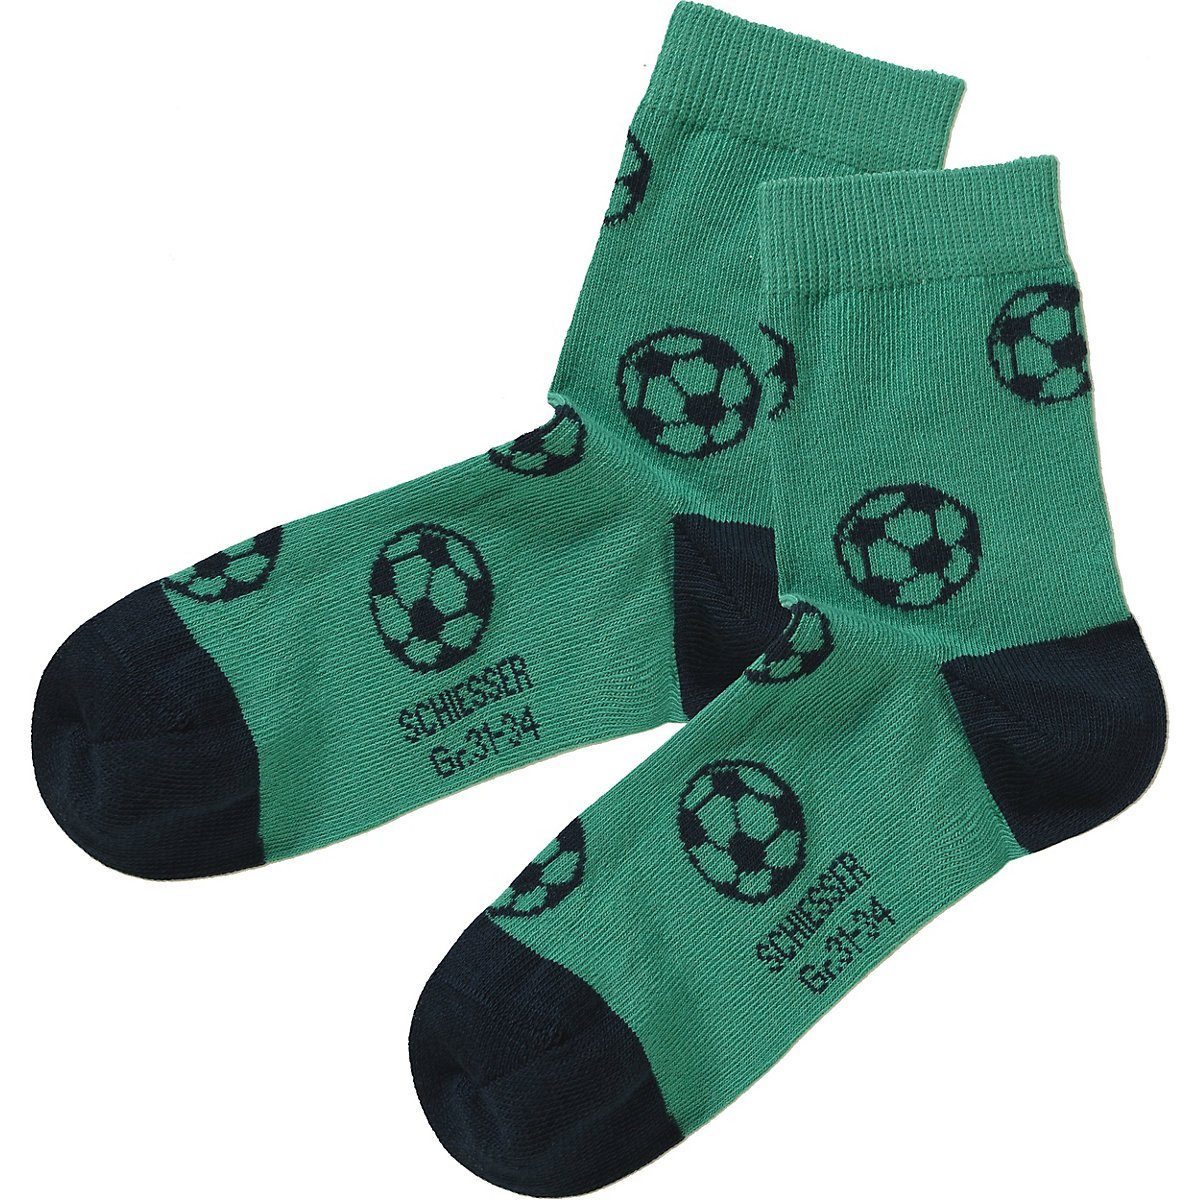 Kinder Kinderunterwäsche Schiesser Socken Socken 5er-Pack für Jungen